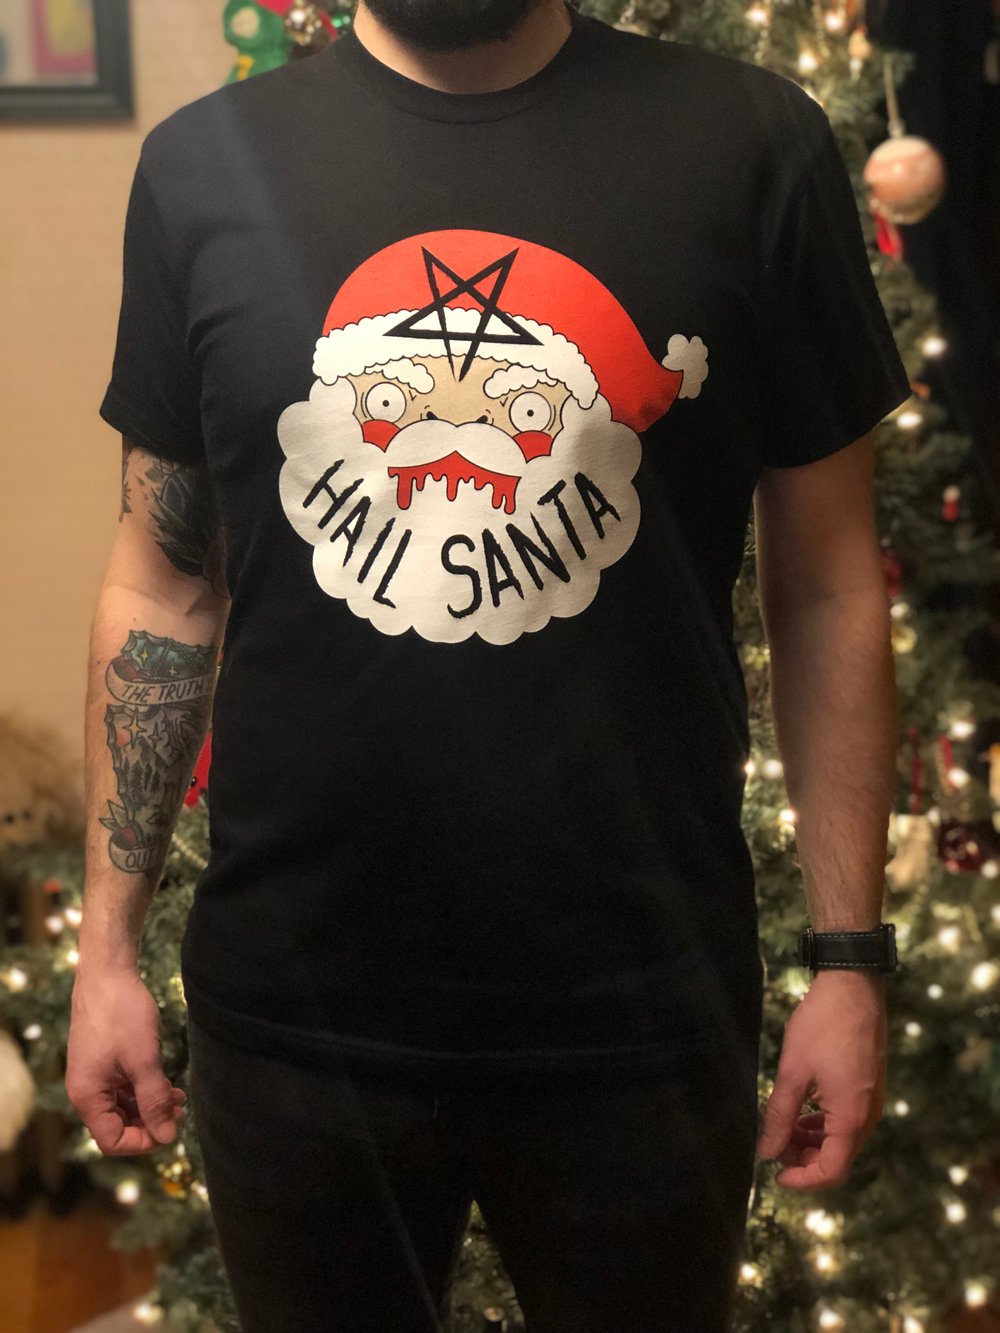 Hail Santa Black T-shirt